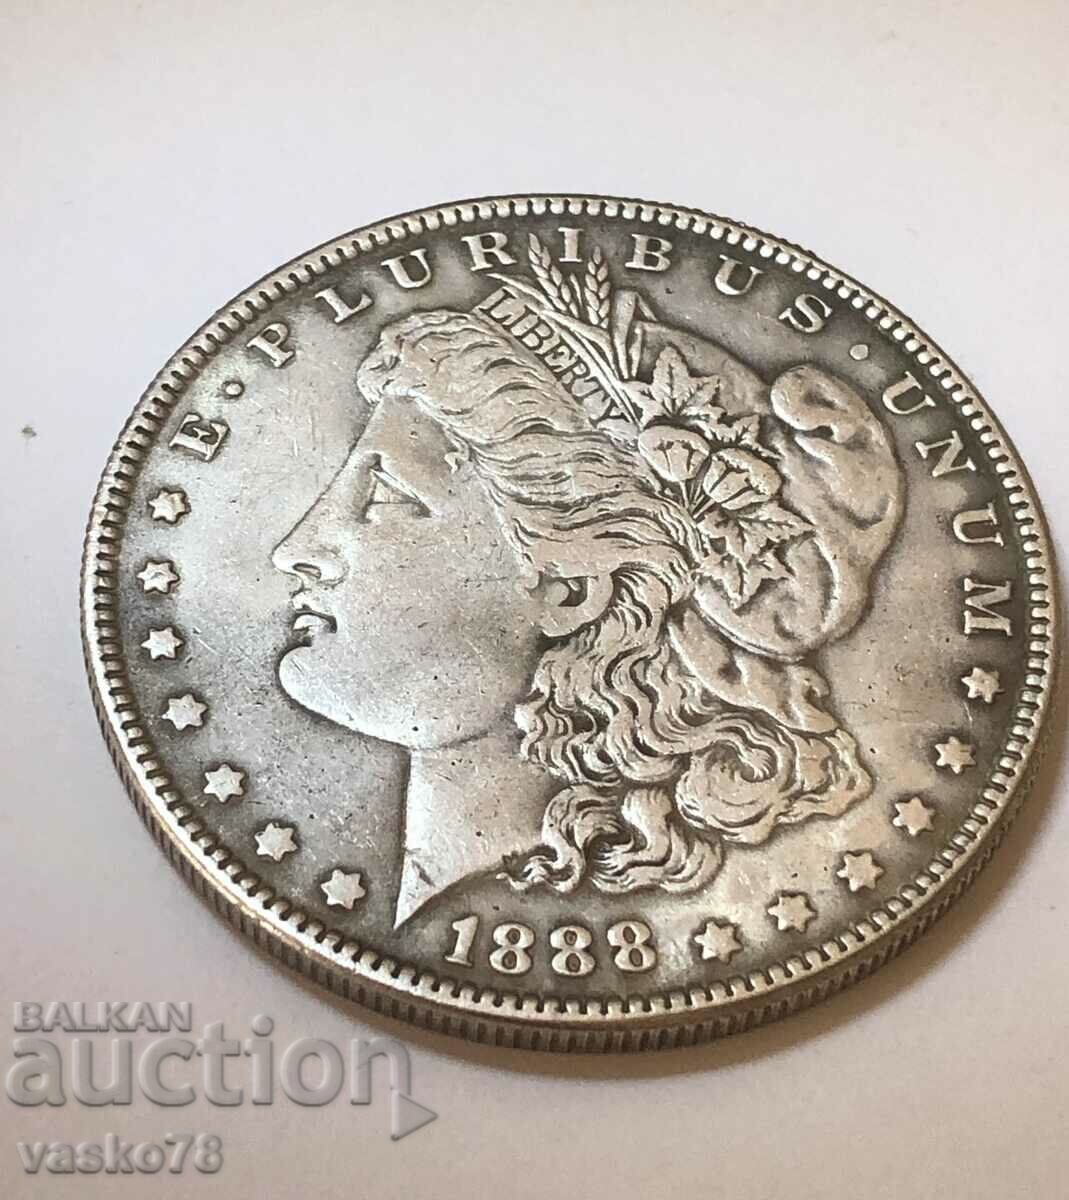 1 DOLLAR 1888